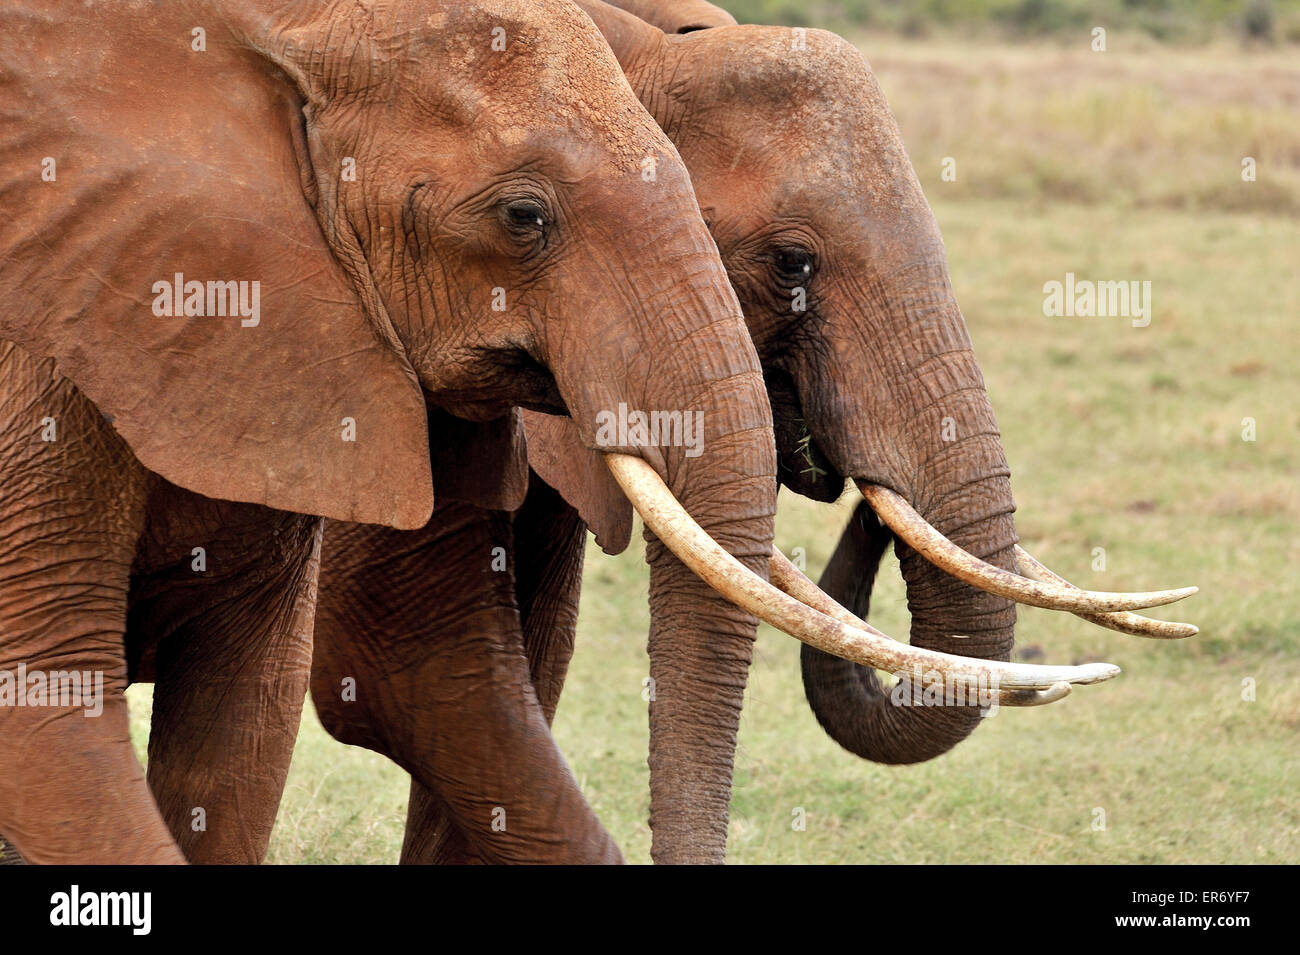 Two Elephants walking side on side Stock Photo